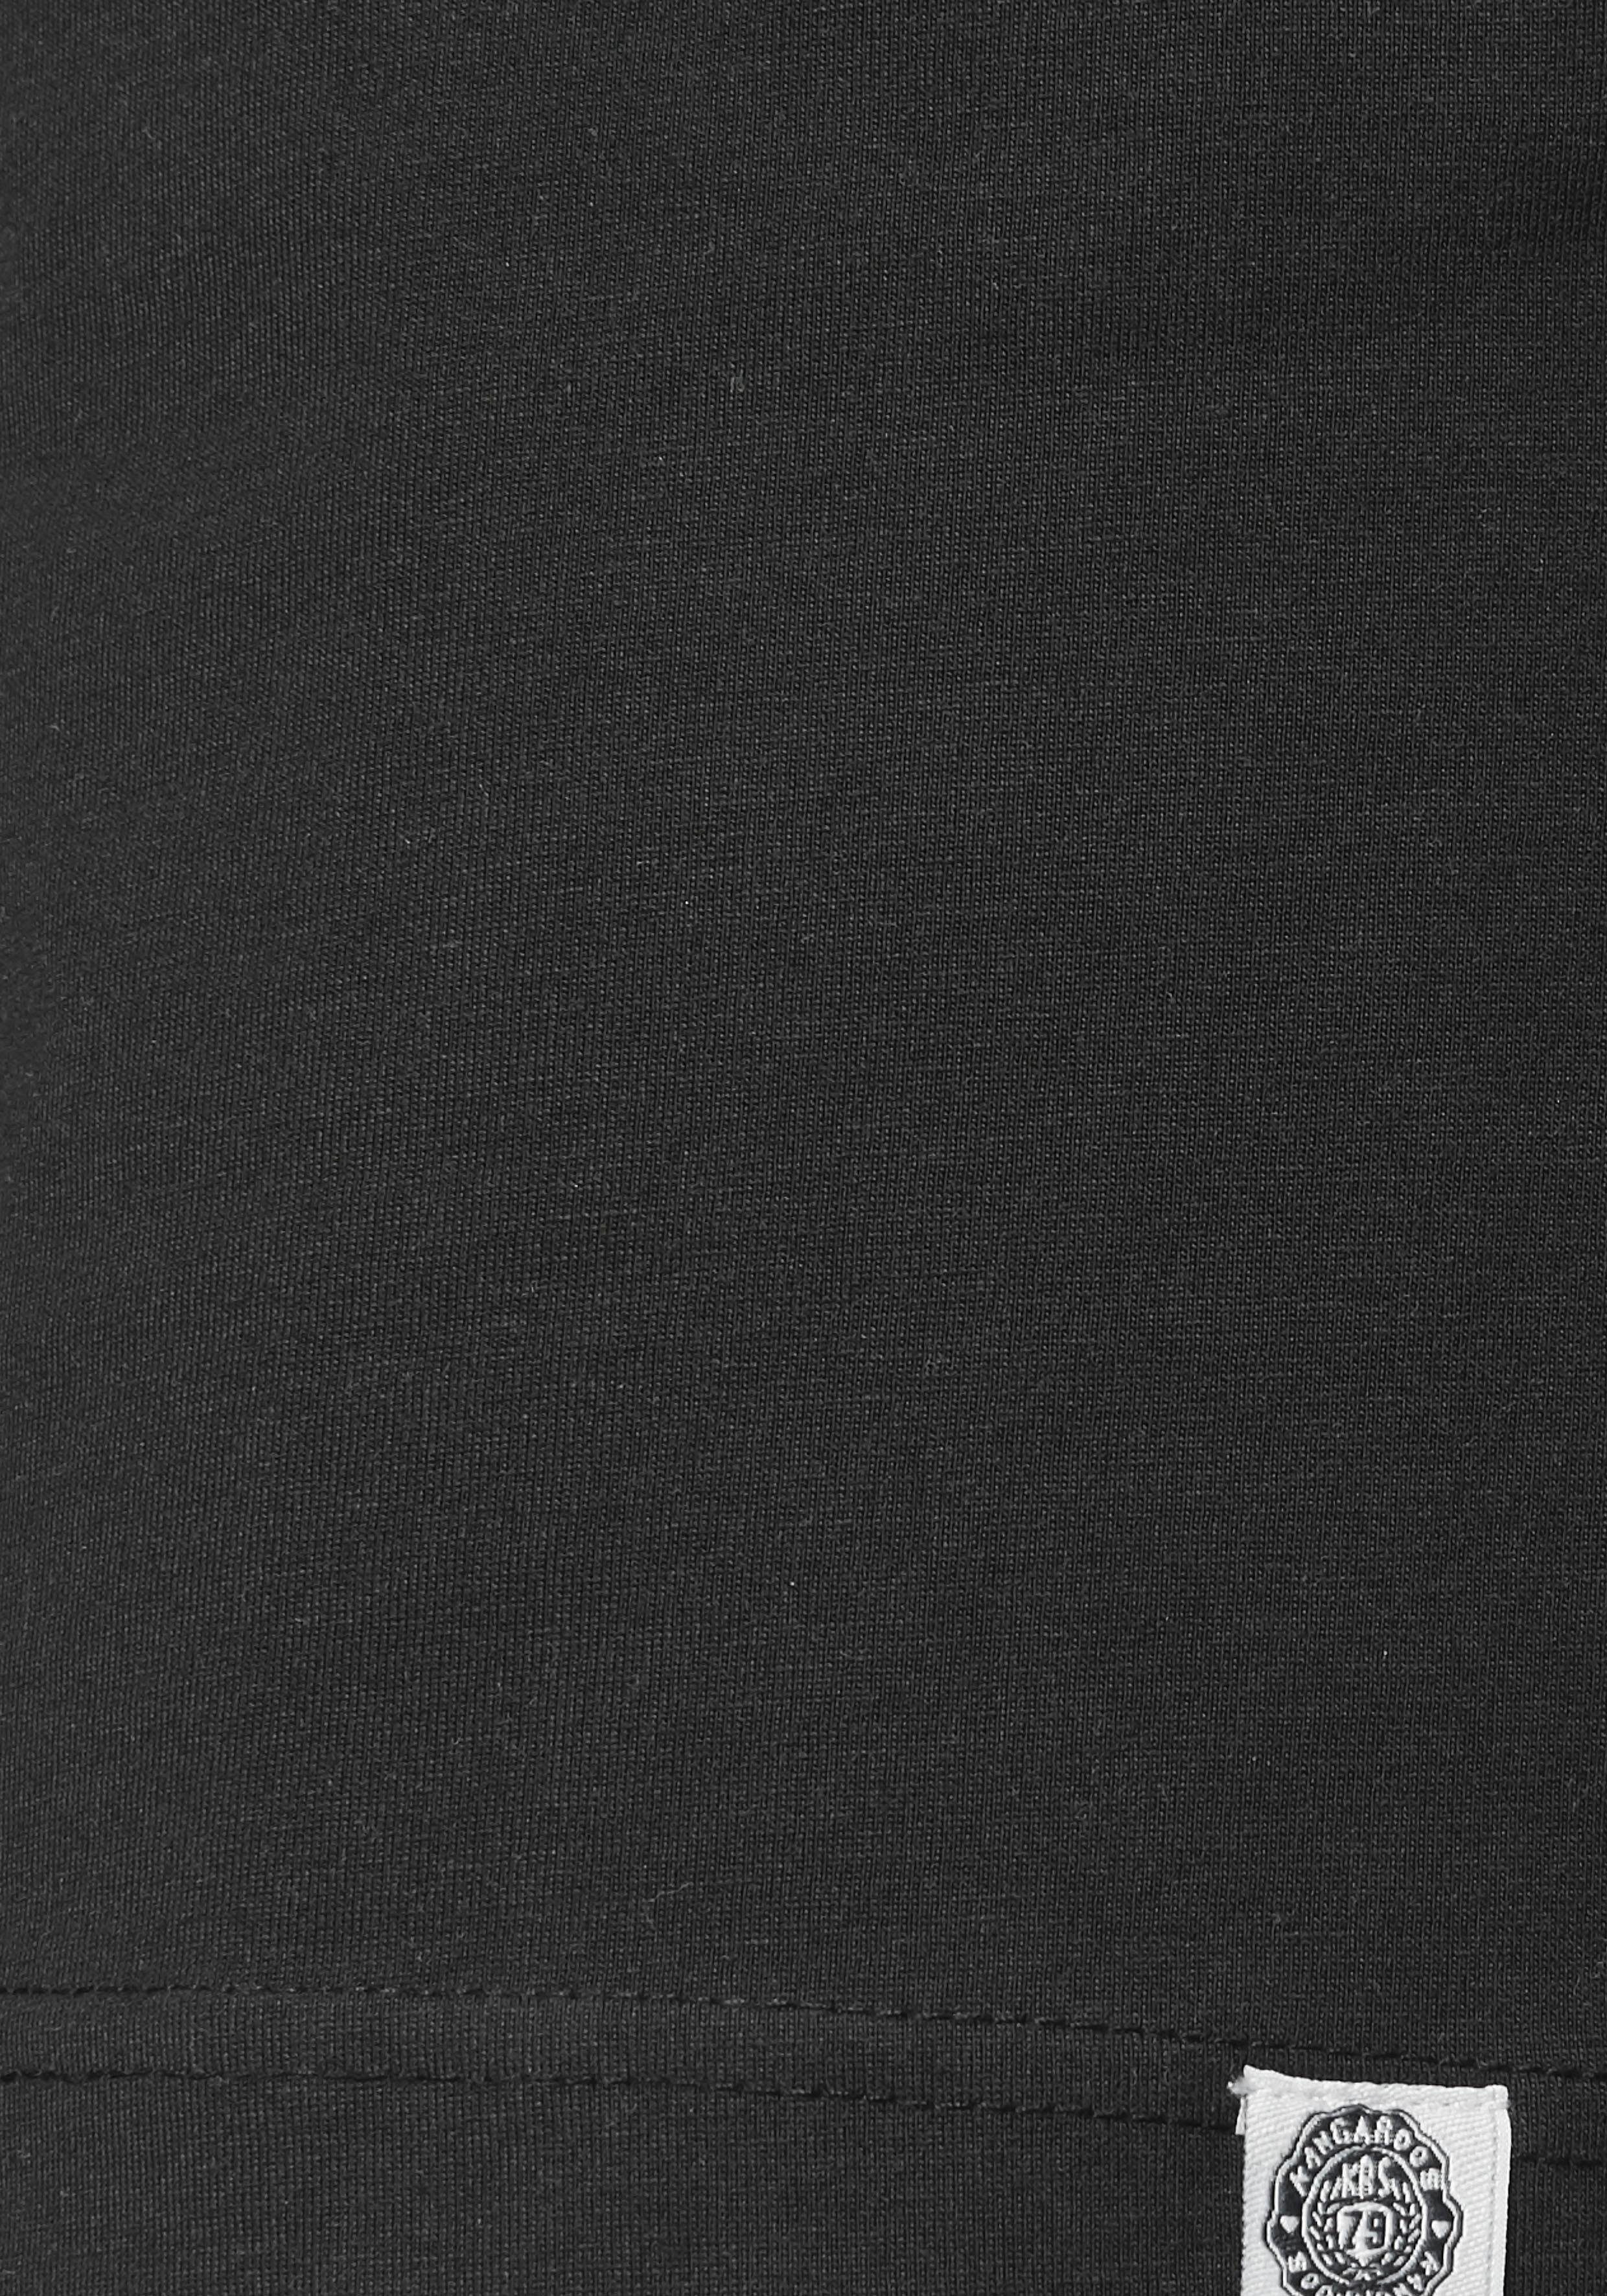 KangaROOS Shirtkleid Anker oder schwarz und Vogel unifarben im tollen Druck